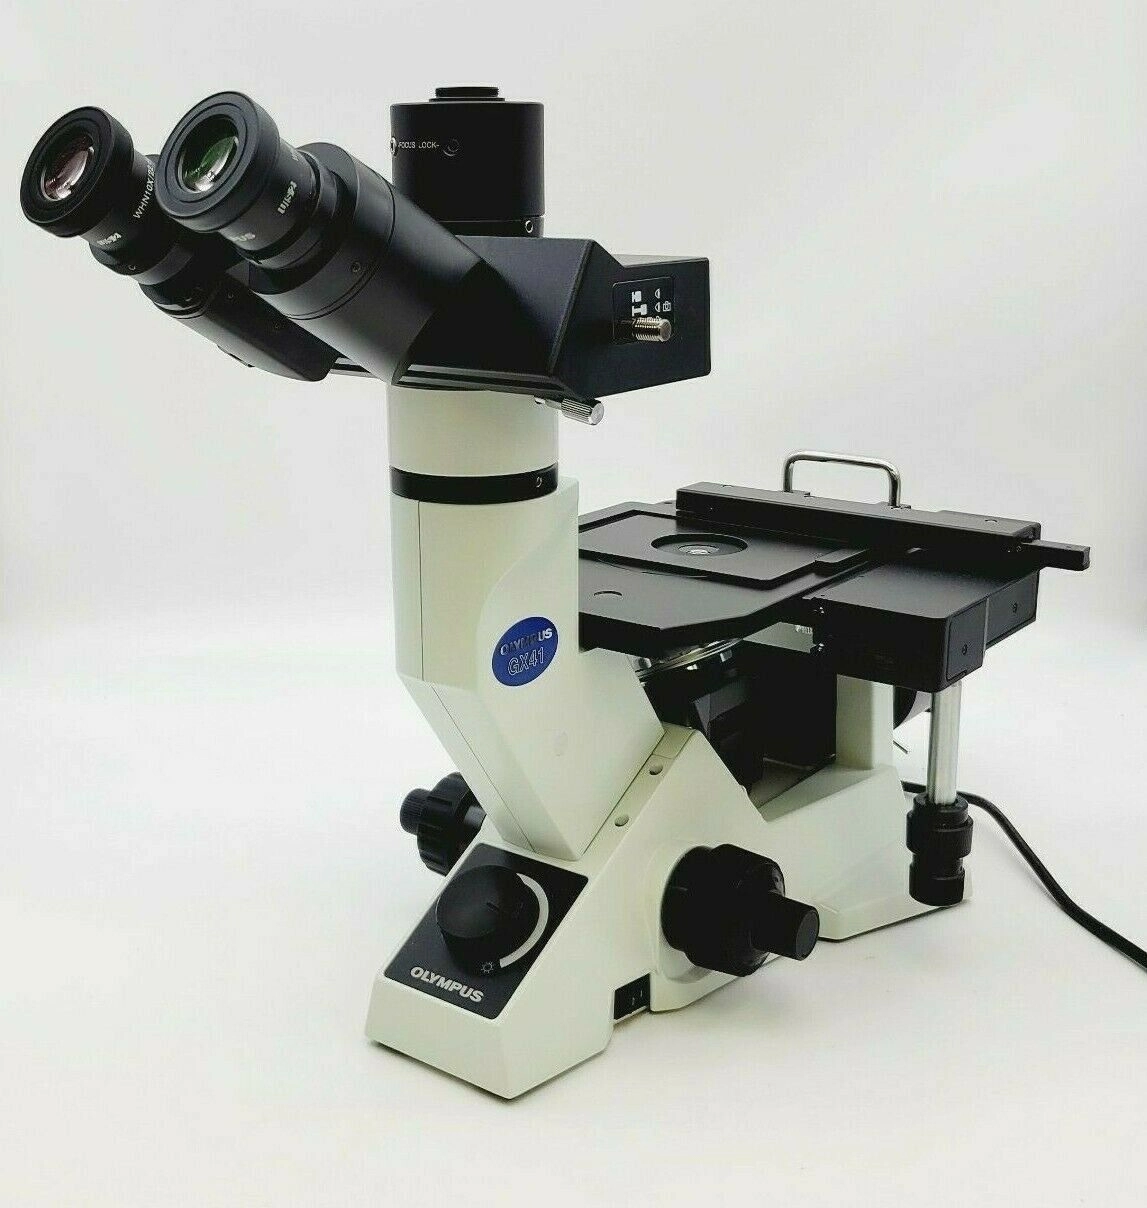 Olympus Microscope GX41 Metallurgical with Trinocular Head